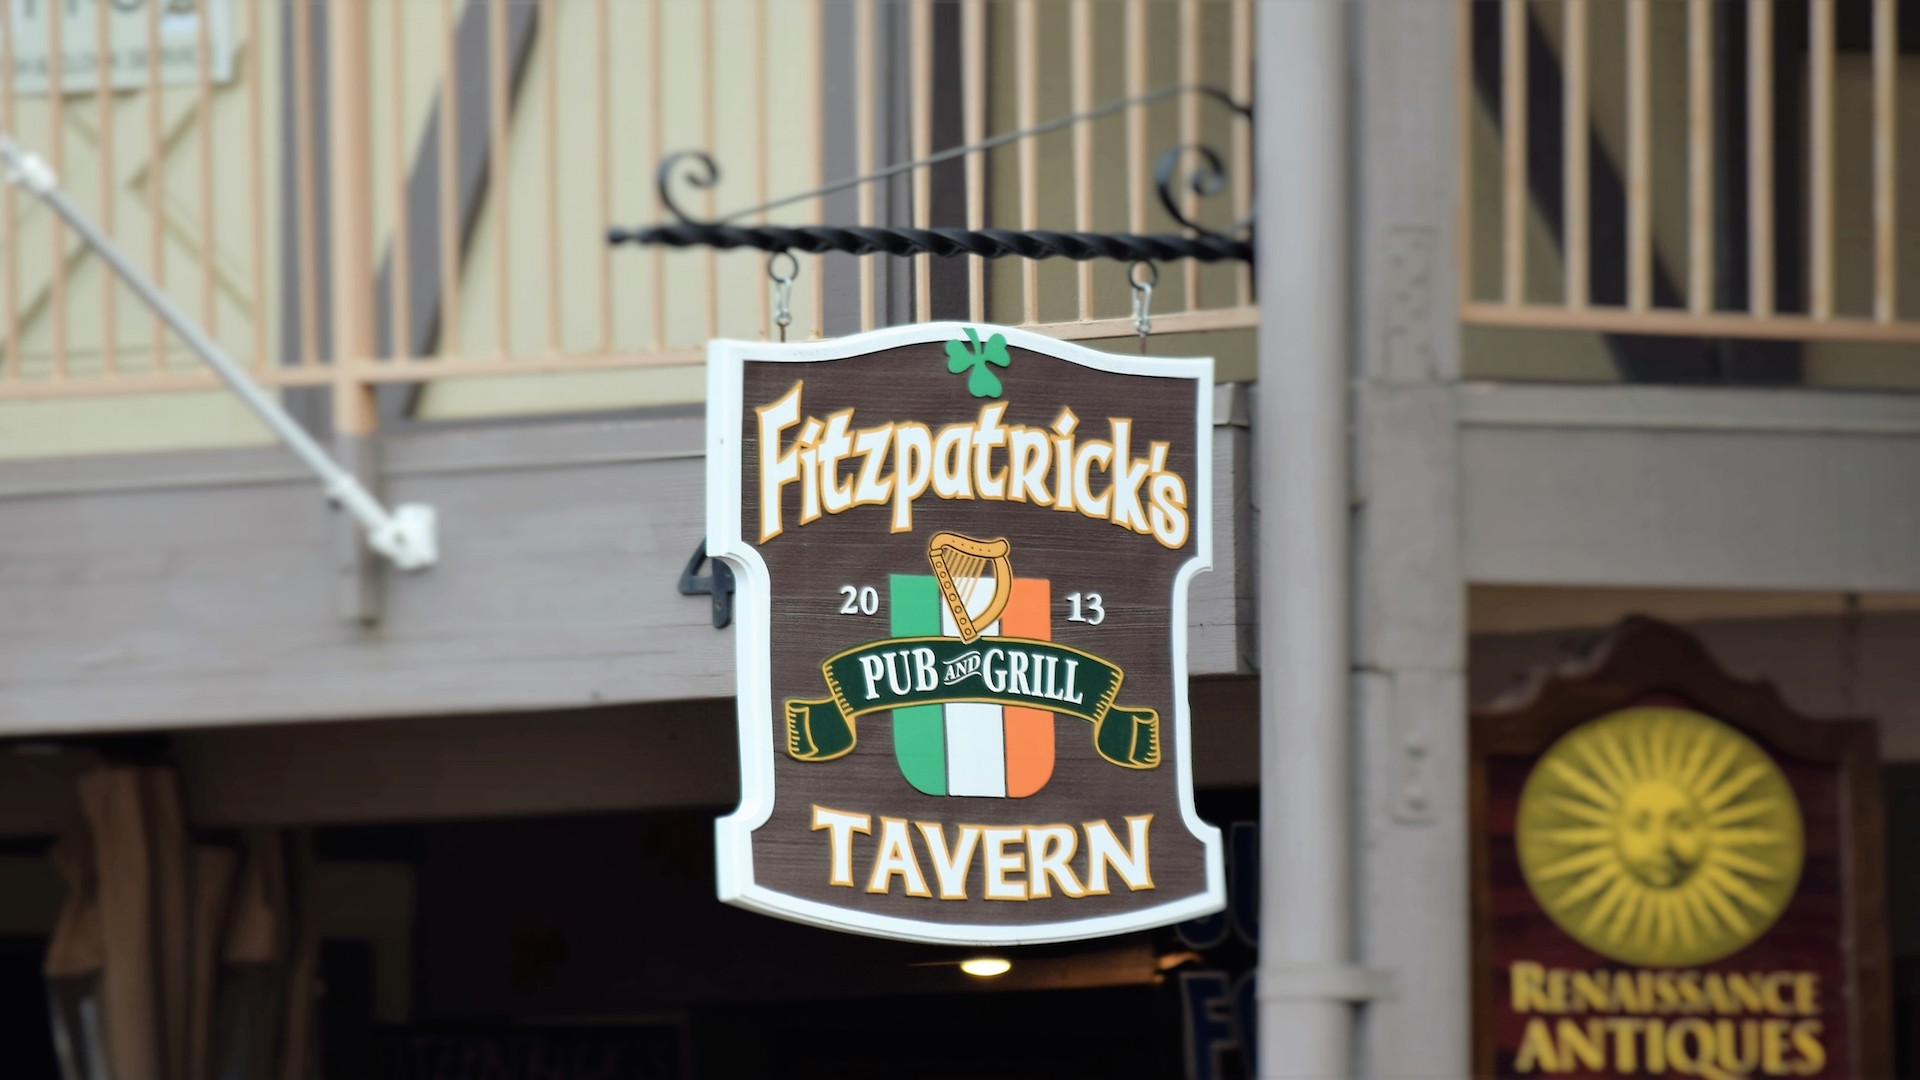 Fitzpatrick’s Tavern